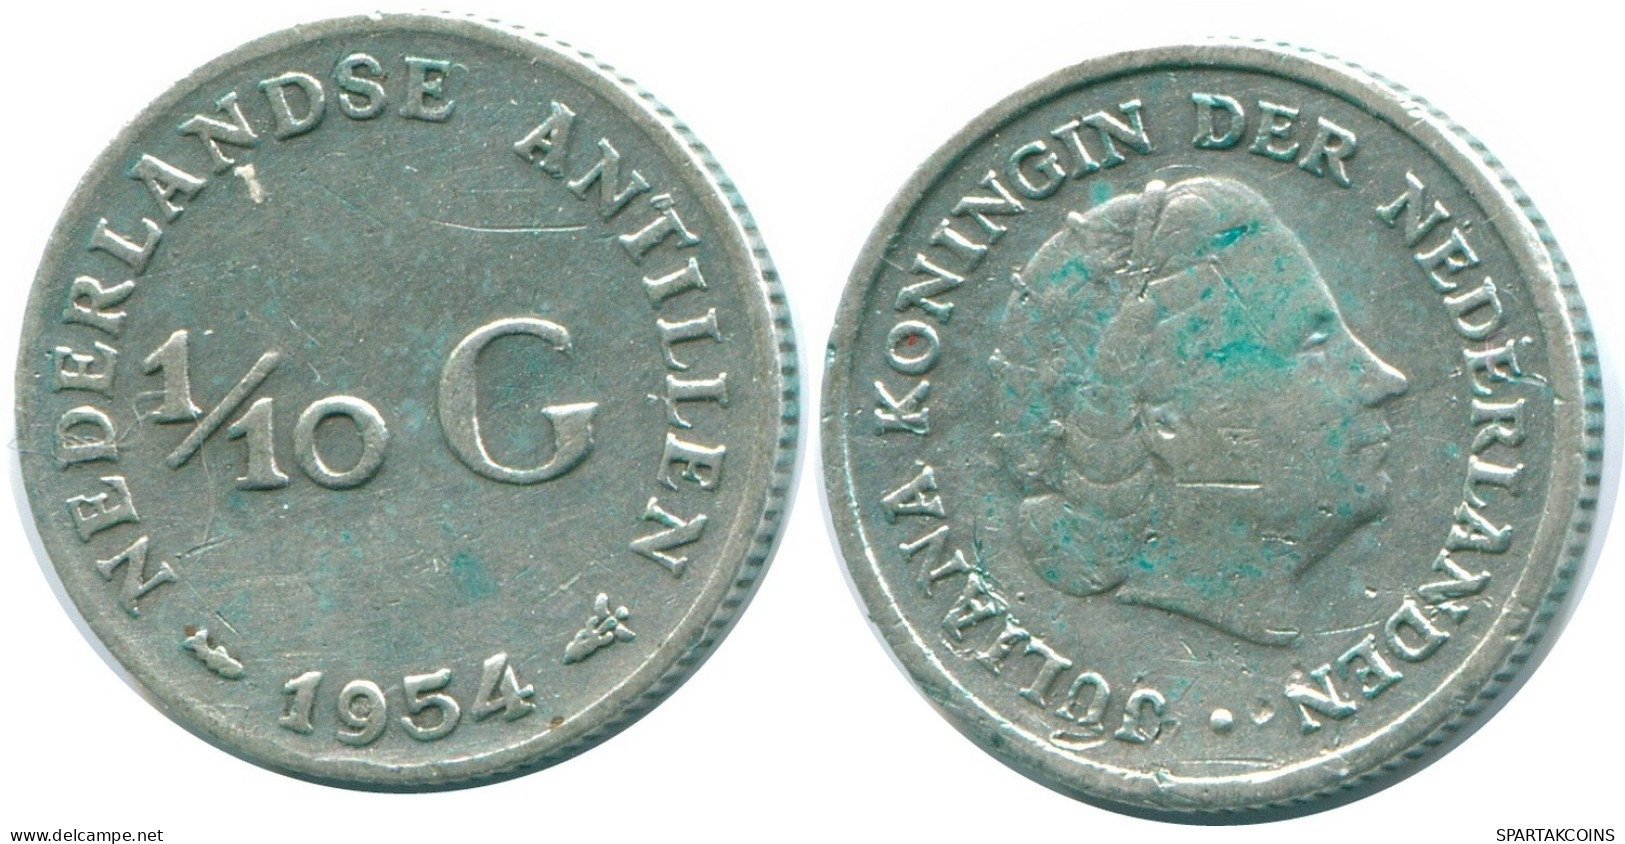 1/10 GULDEN 1954 NIEDERLÄNDISCHE ANTILLEN SILBER Koloniale Münze #NL12051.3.D.A - Niederländische Antillen